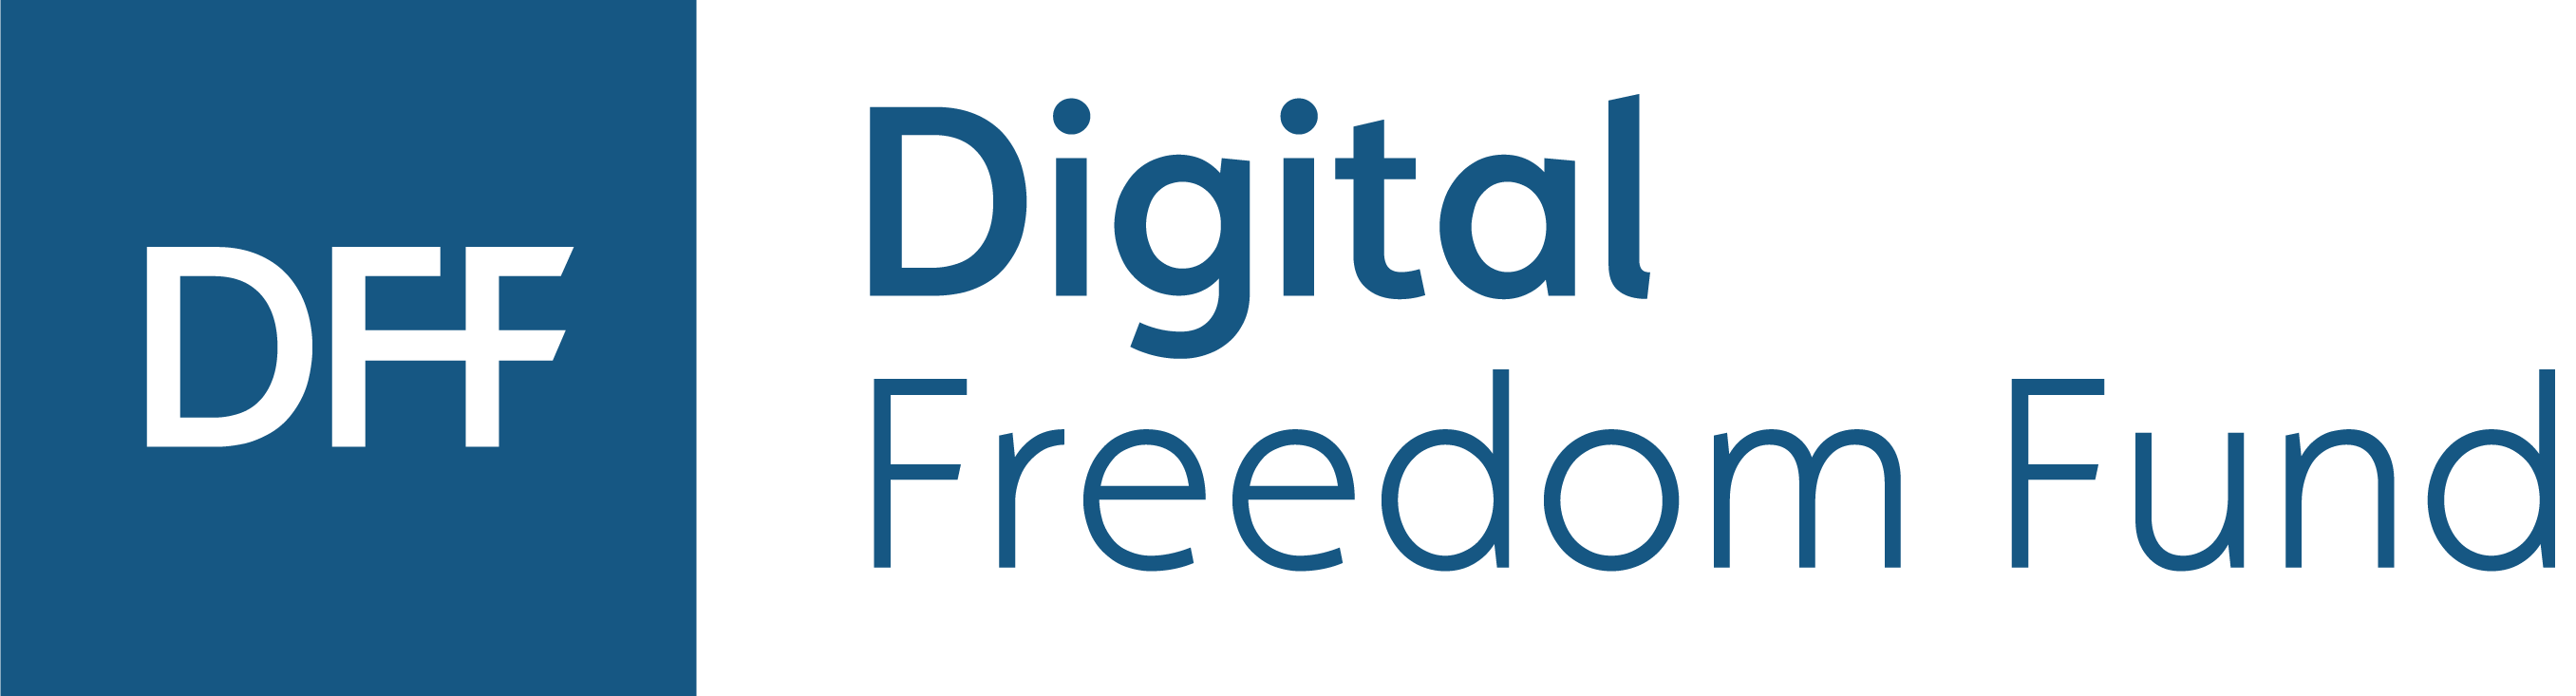 Digital Freedom Fund